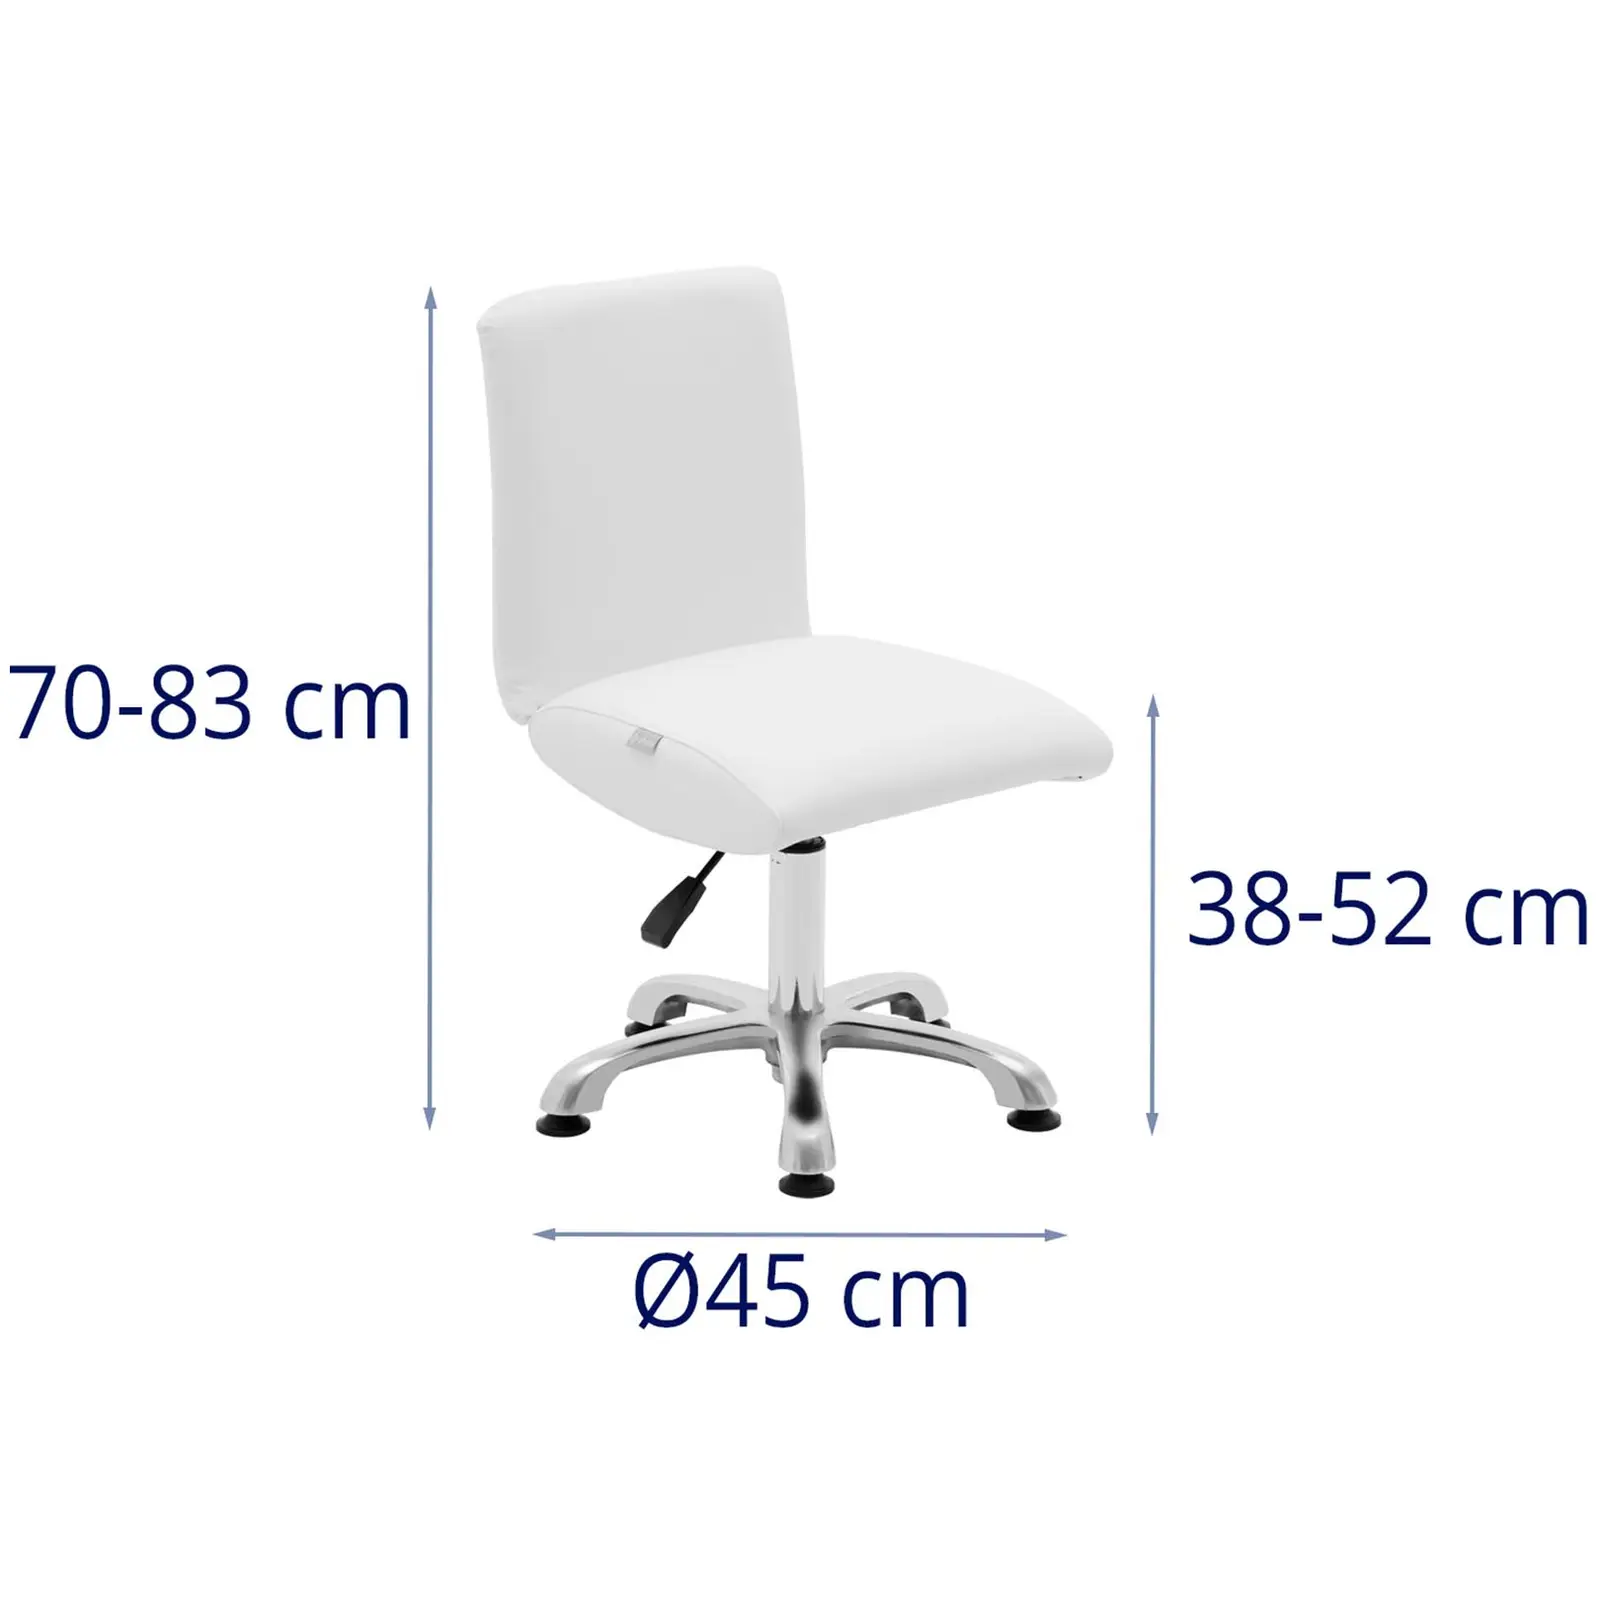 Andrahandssortering Arbetsstol med ryggstöd - 38 - 52 cm - 150 kg - Vit